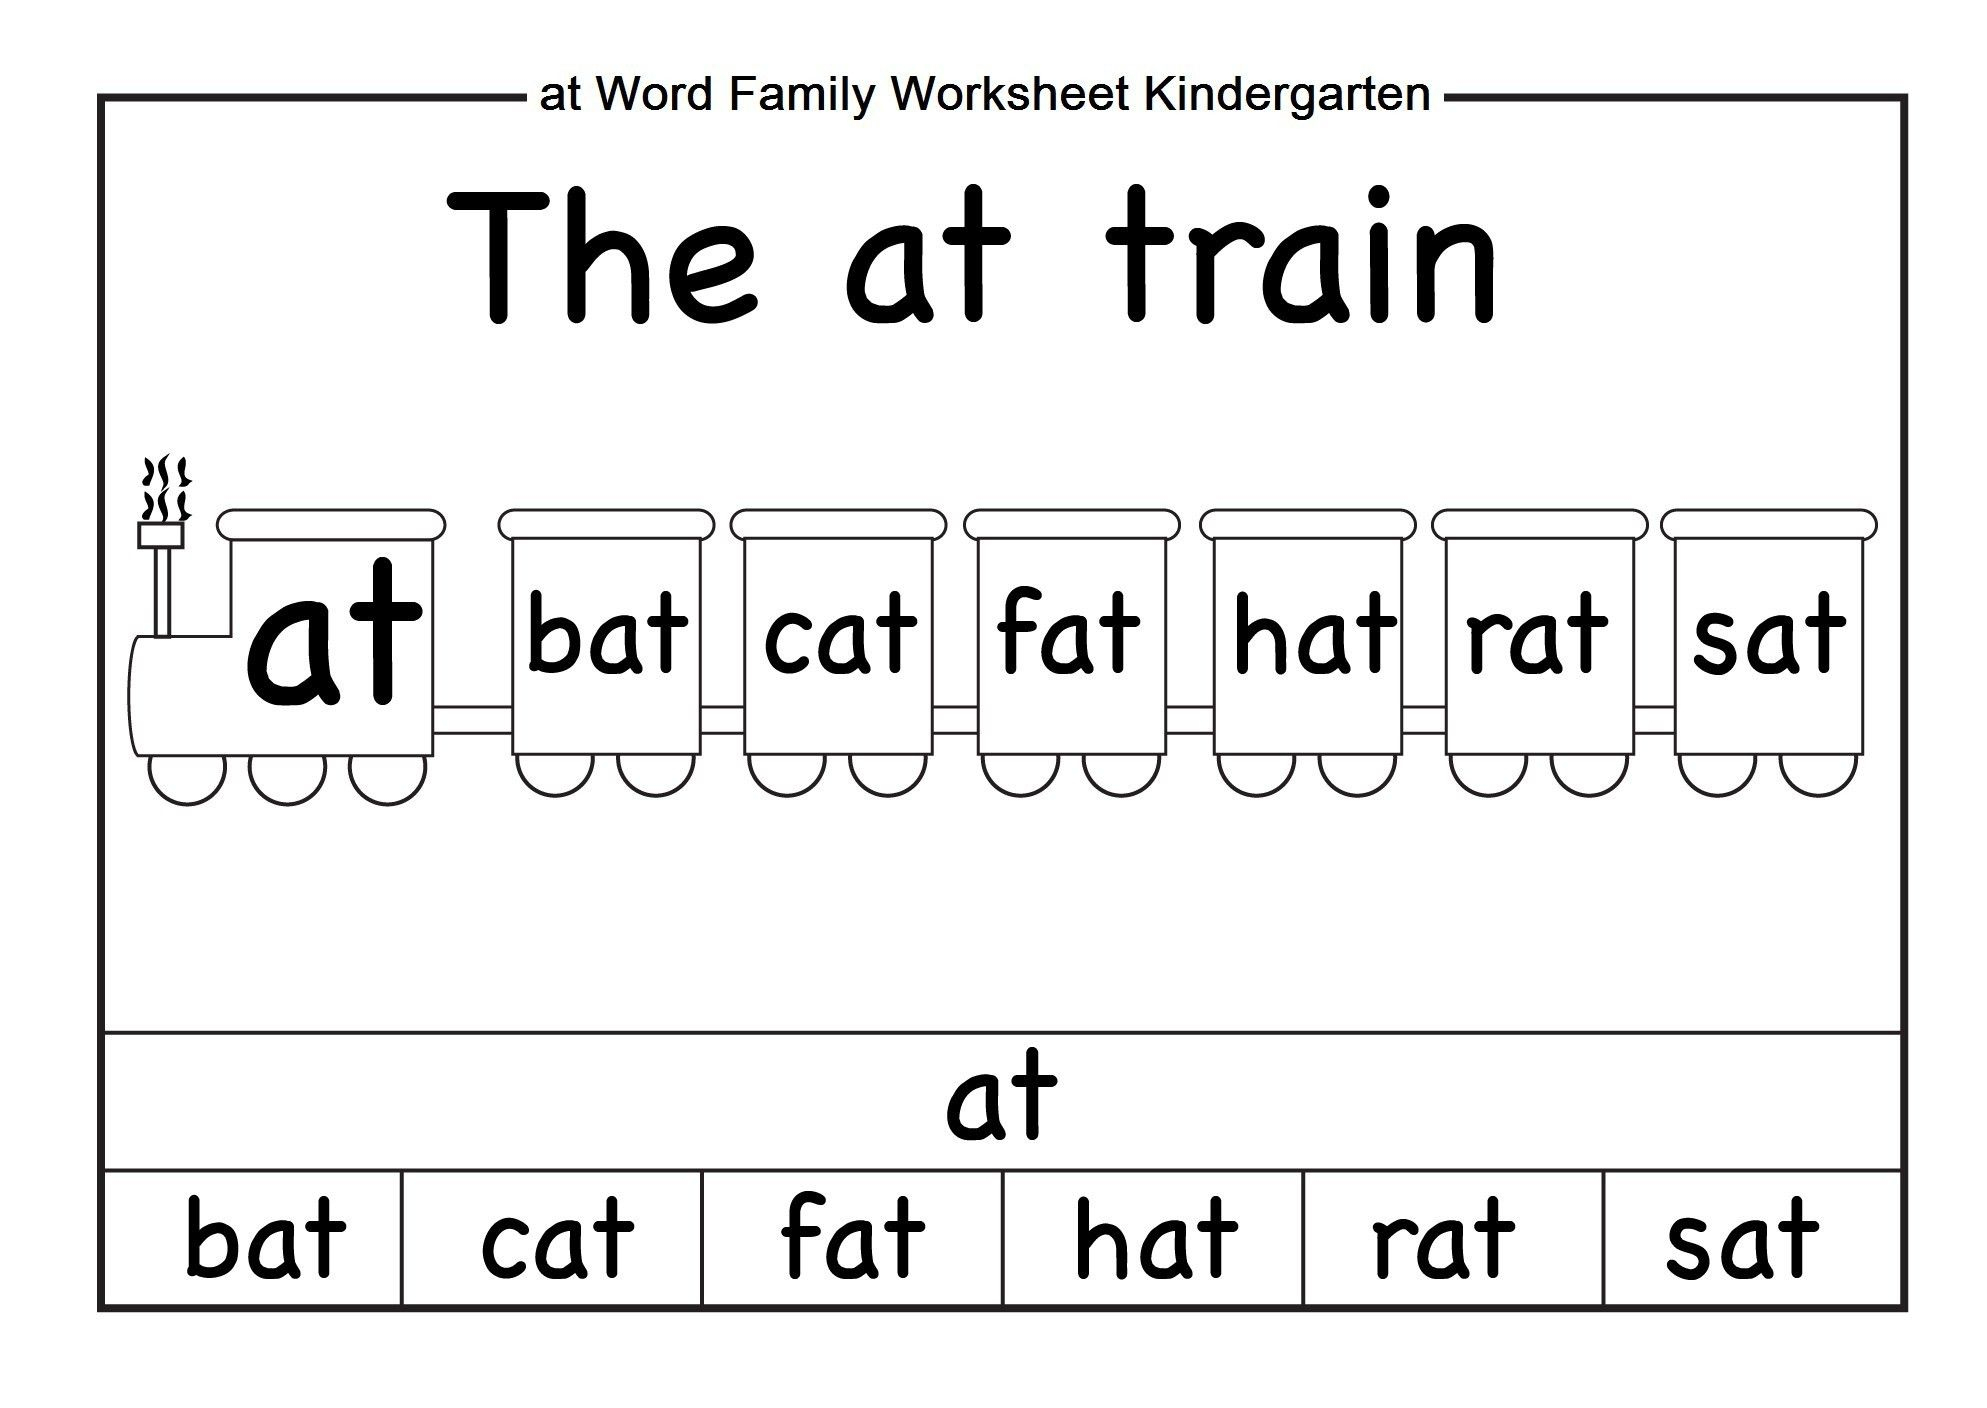 Word Family Worksheets Kindergarten - Briefencounters Worksheet - Free Printable Word Family Worksheets For Kindergarten